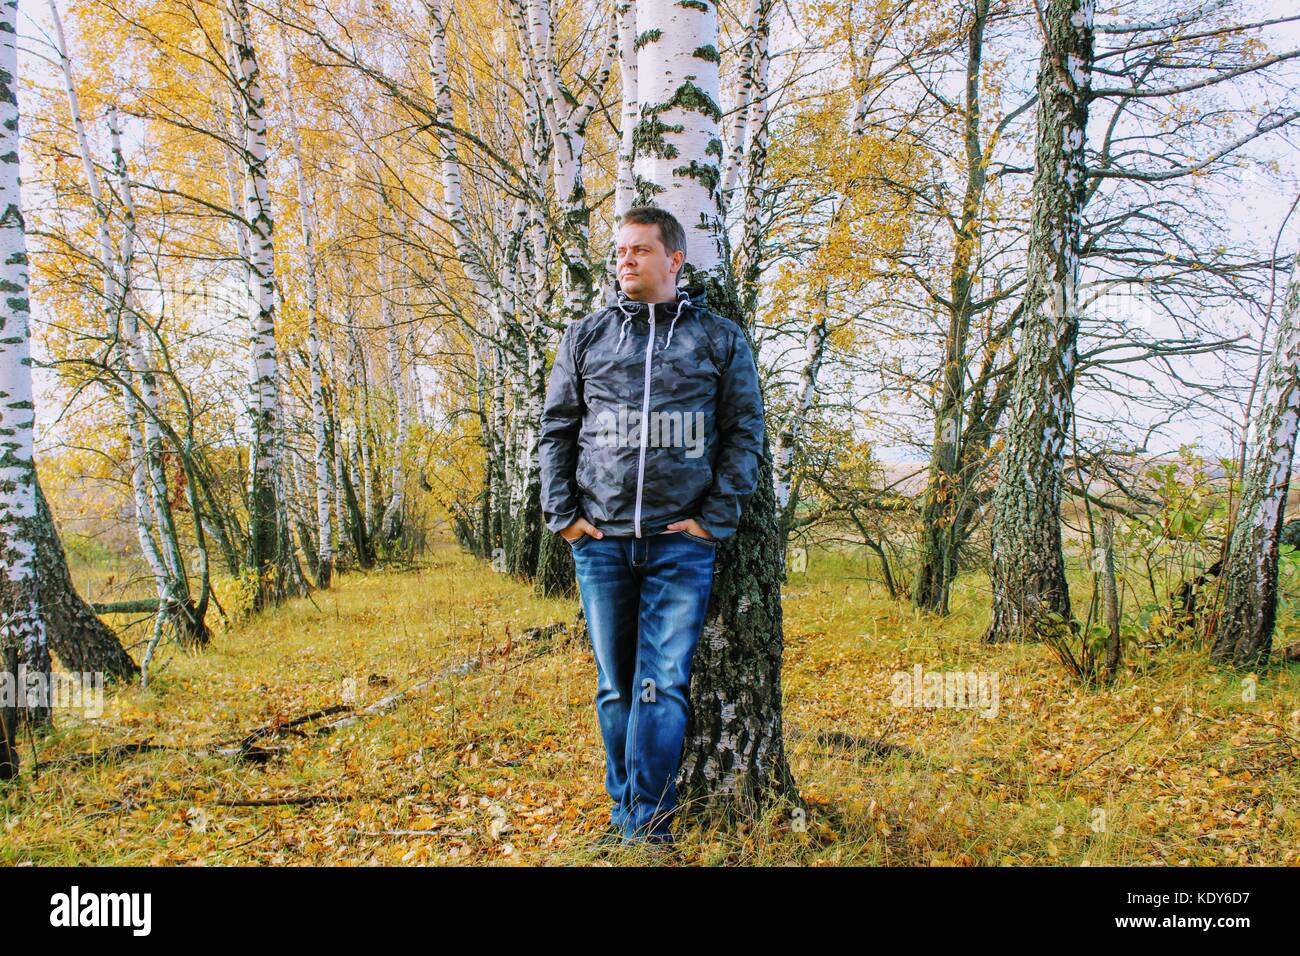 Temps d'automne : un homme en jeans bleu posant dans le contexte d'une forêt de bouleaux en automne. Banque D'Images